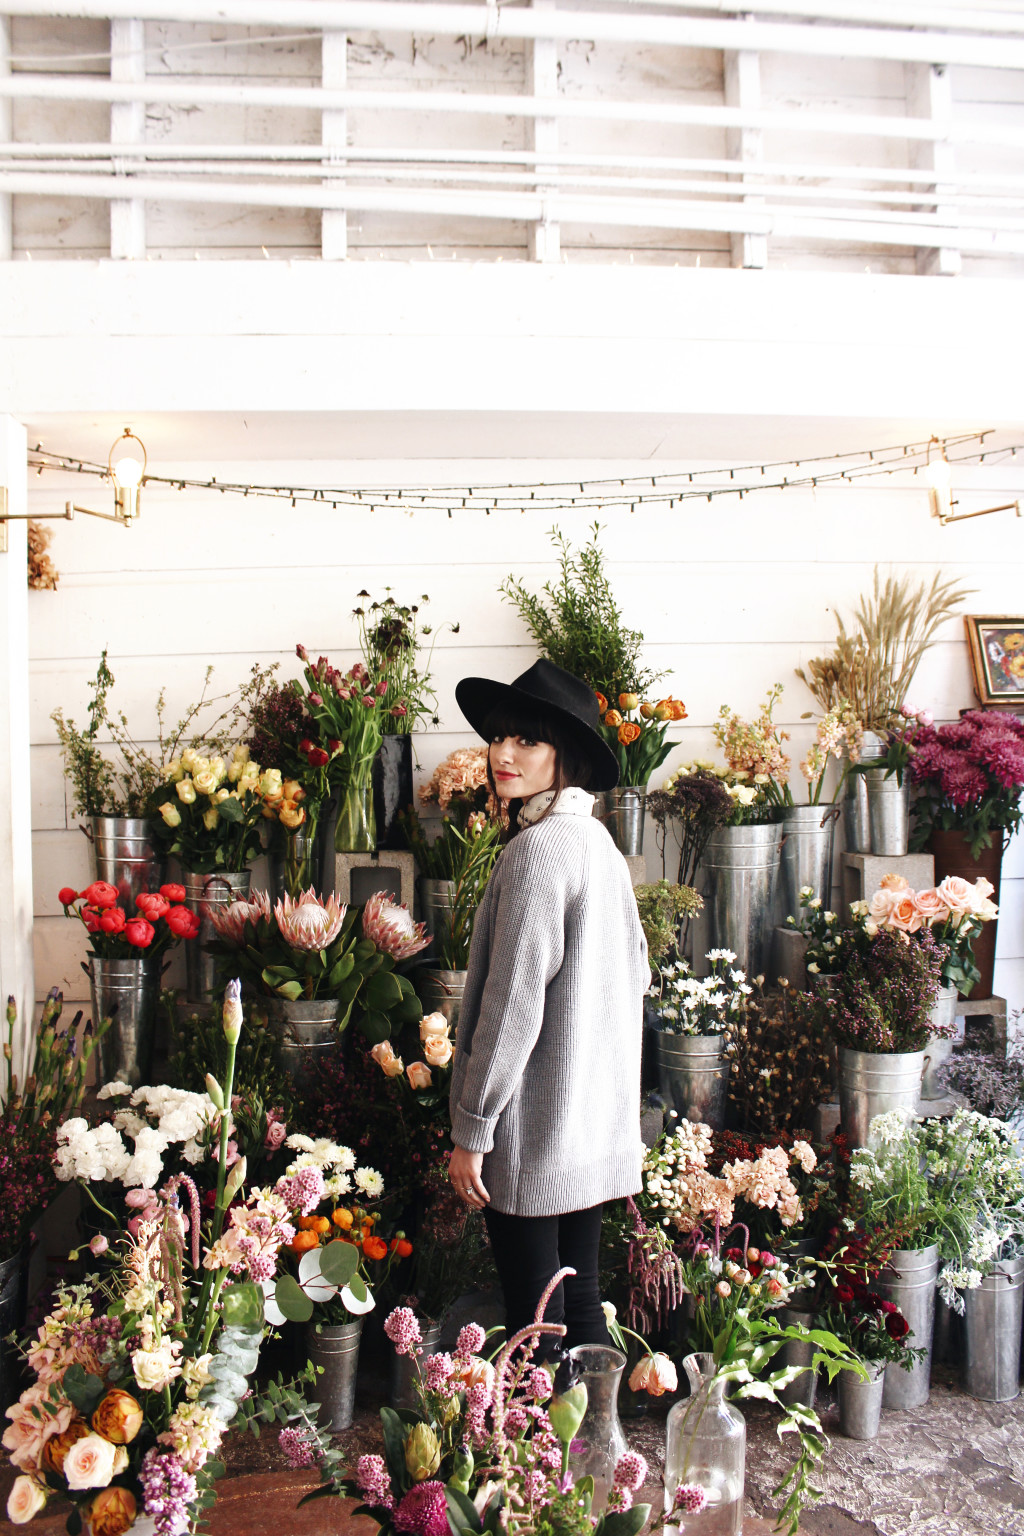 New Darlings - Travel - San Francisco, CA - Flowershop